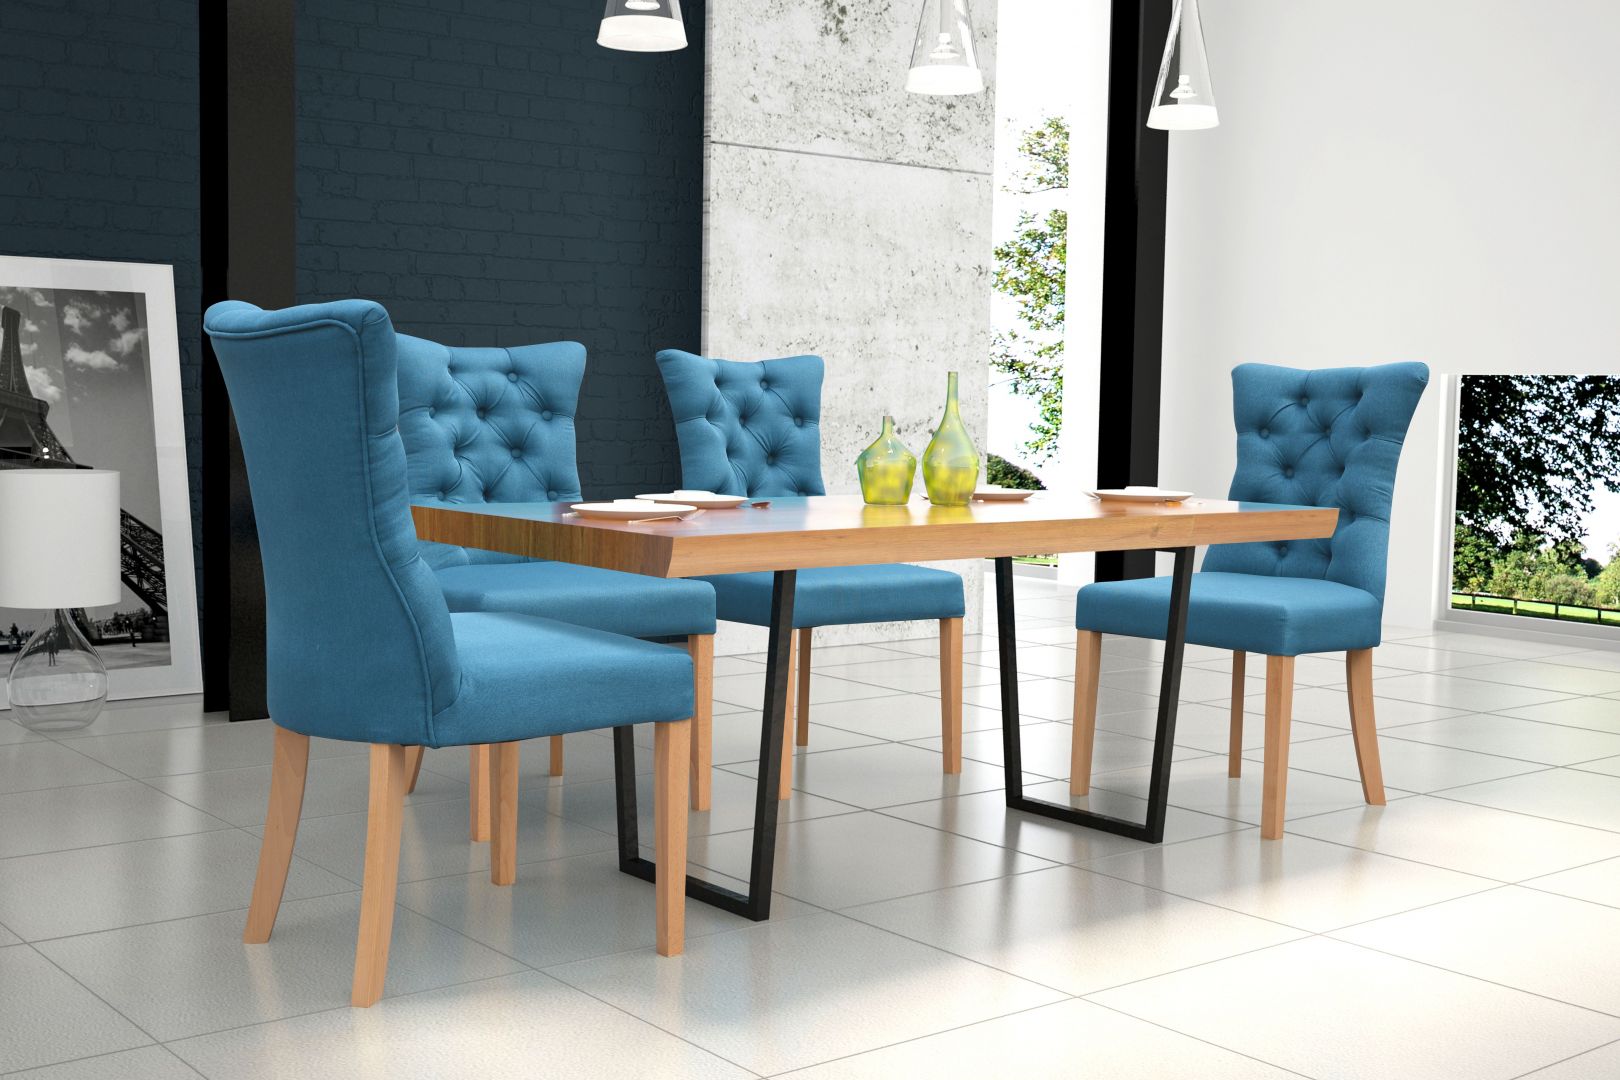 Krzesła obite niebieską, a w części oparciowej pikowaną tkaniną świetnie komponują się z drewnianym stołem na metalowych nóżkach. Fot. Dom Art Styl